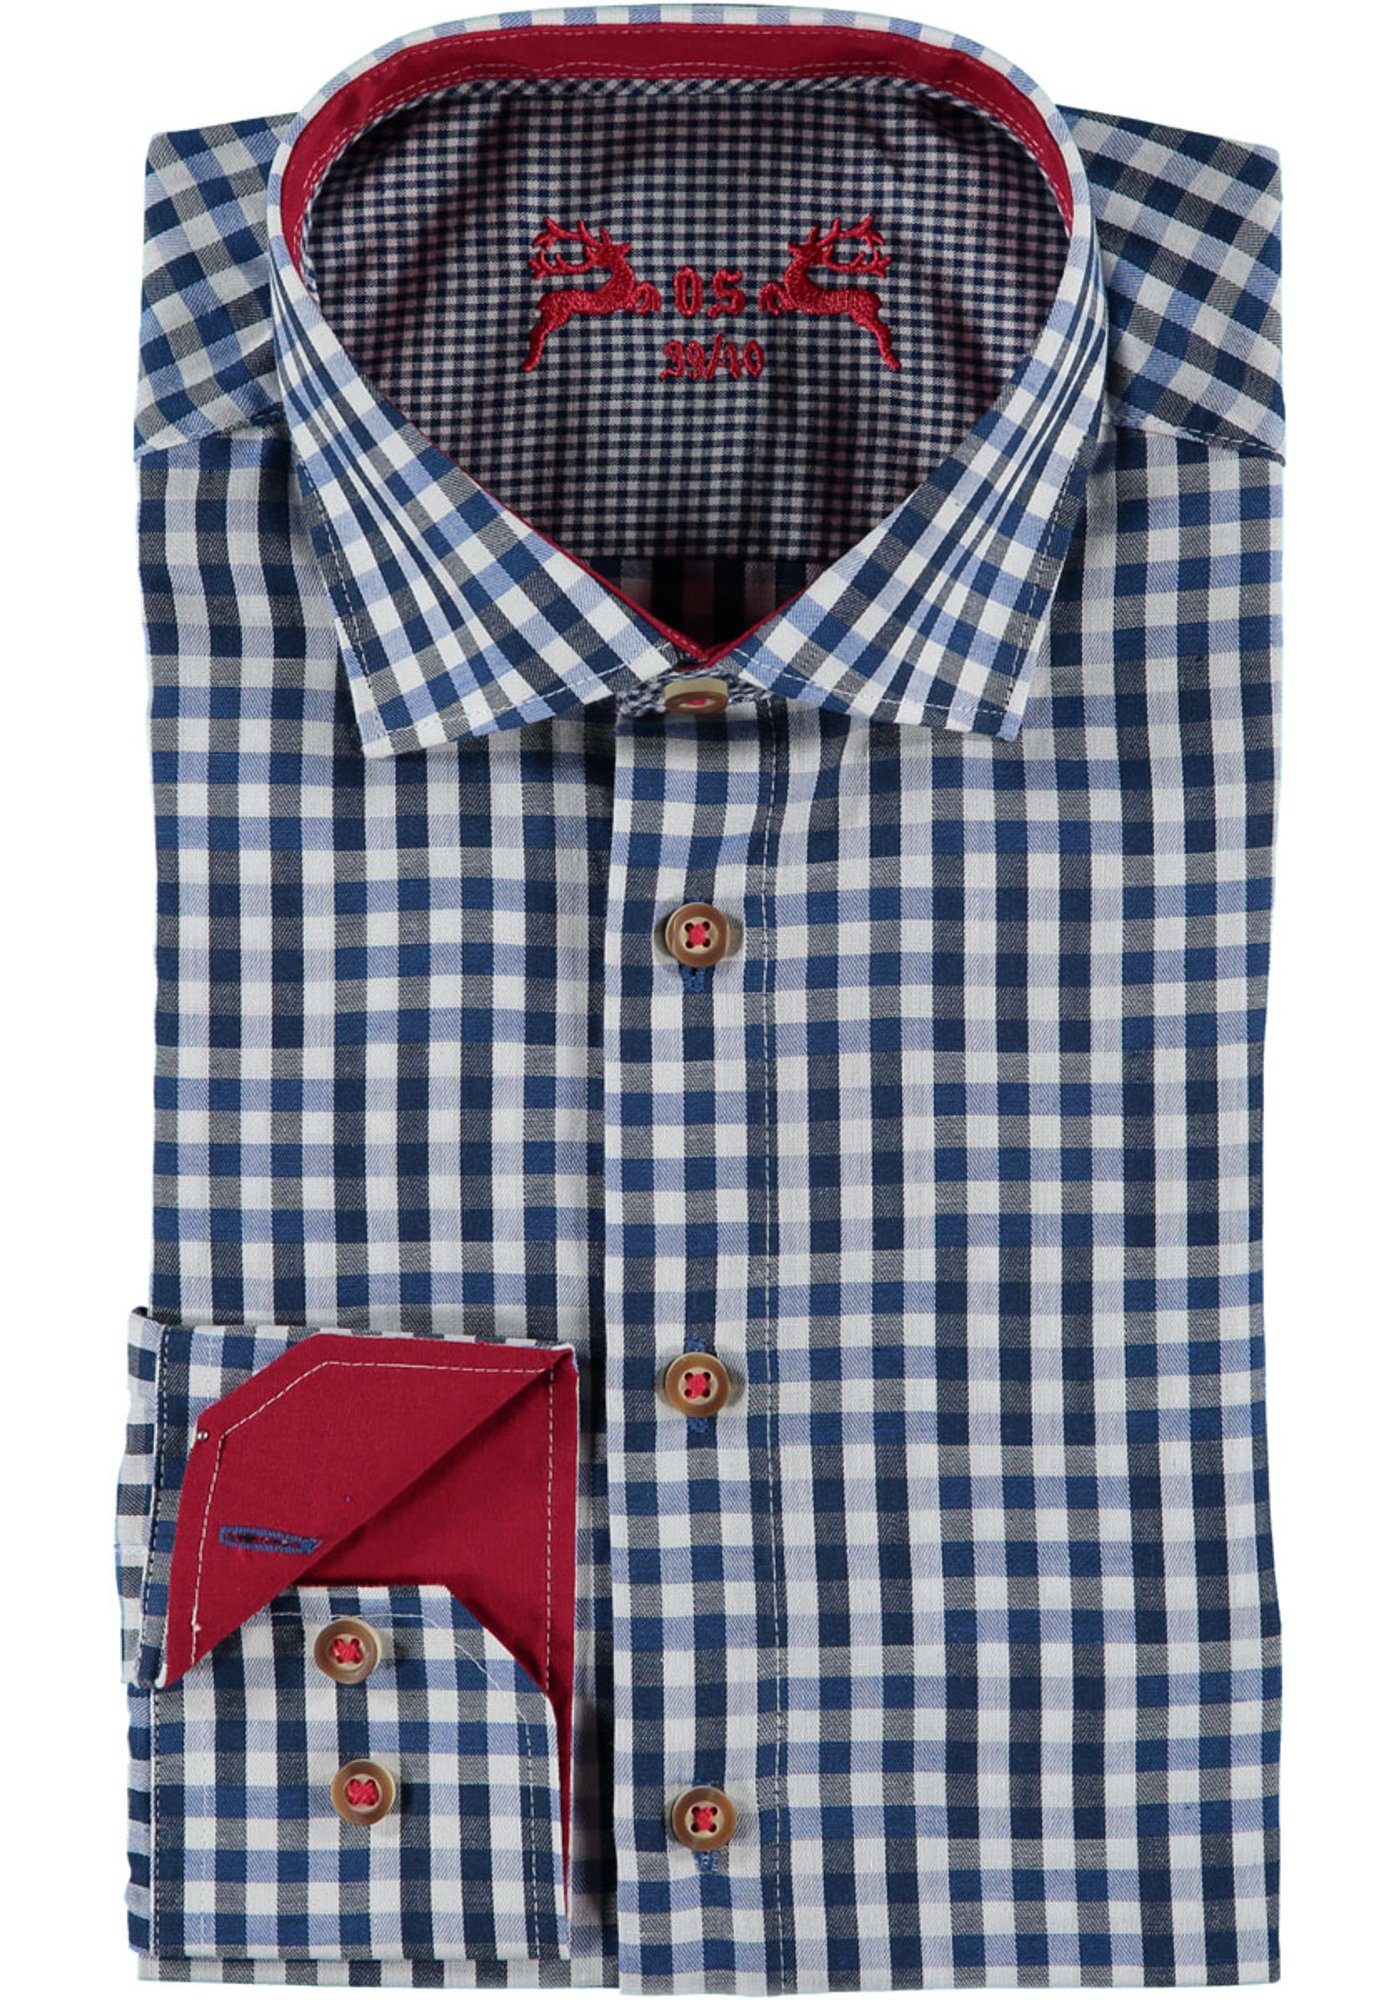 OS-Trachten Trachtenhemd Merogu mit extra langen Ärmeln, Manschetten in Kontraststoff kornblau